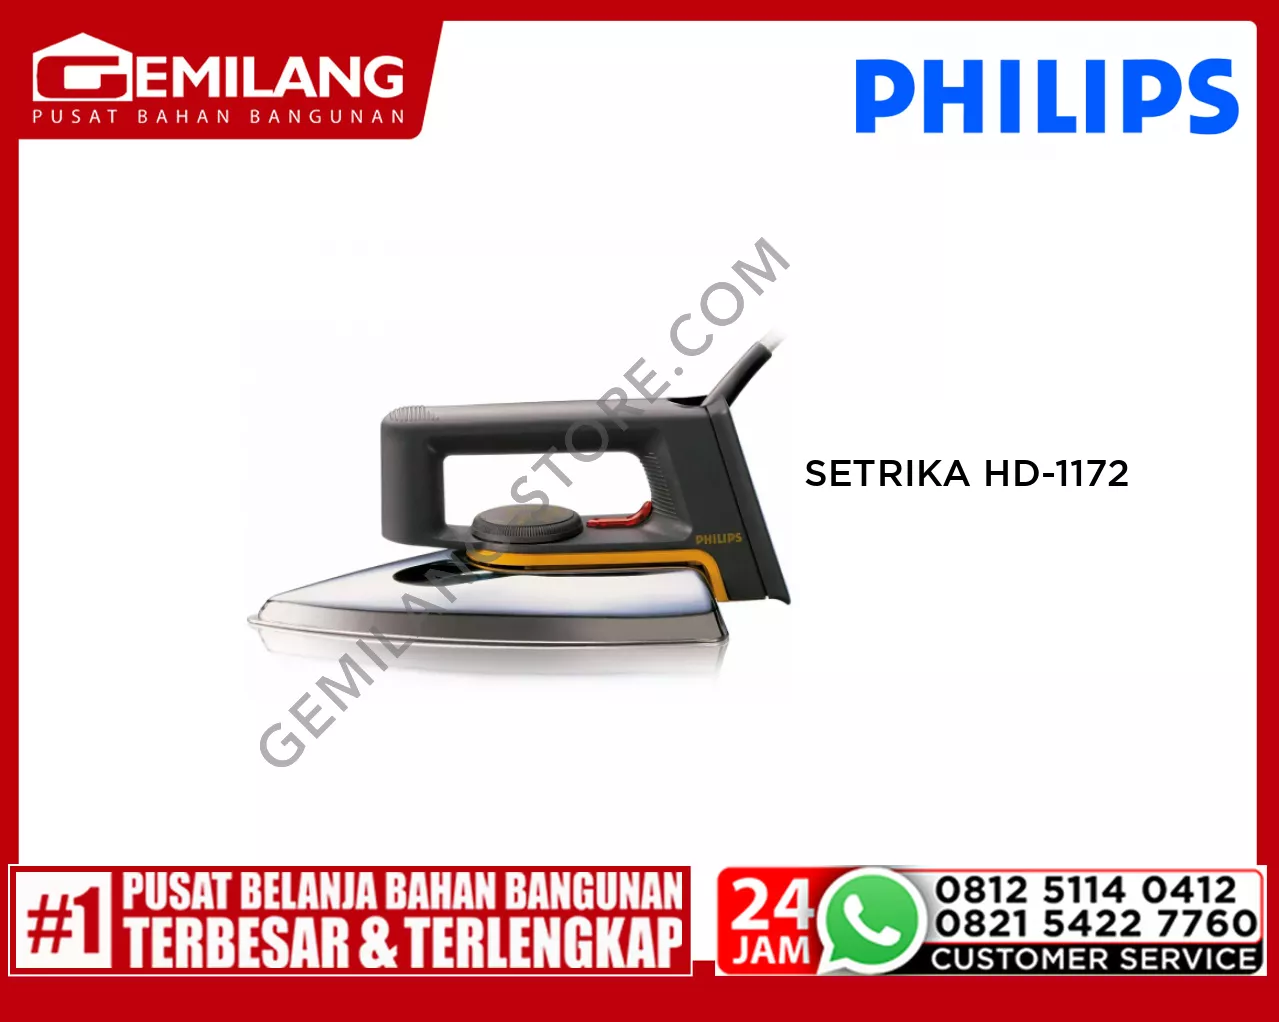 PHILIPS SETRIKA HD-1172